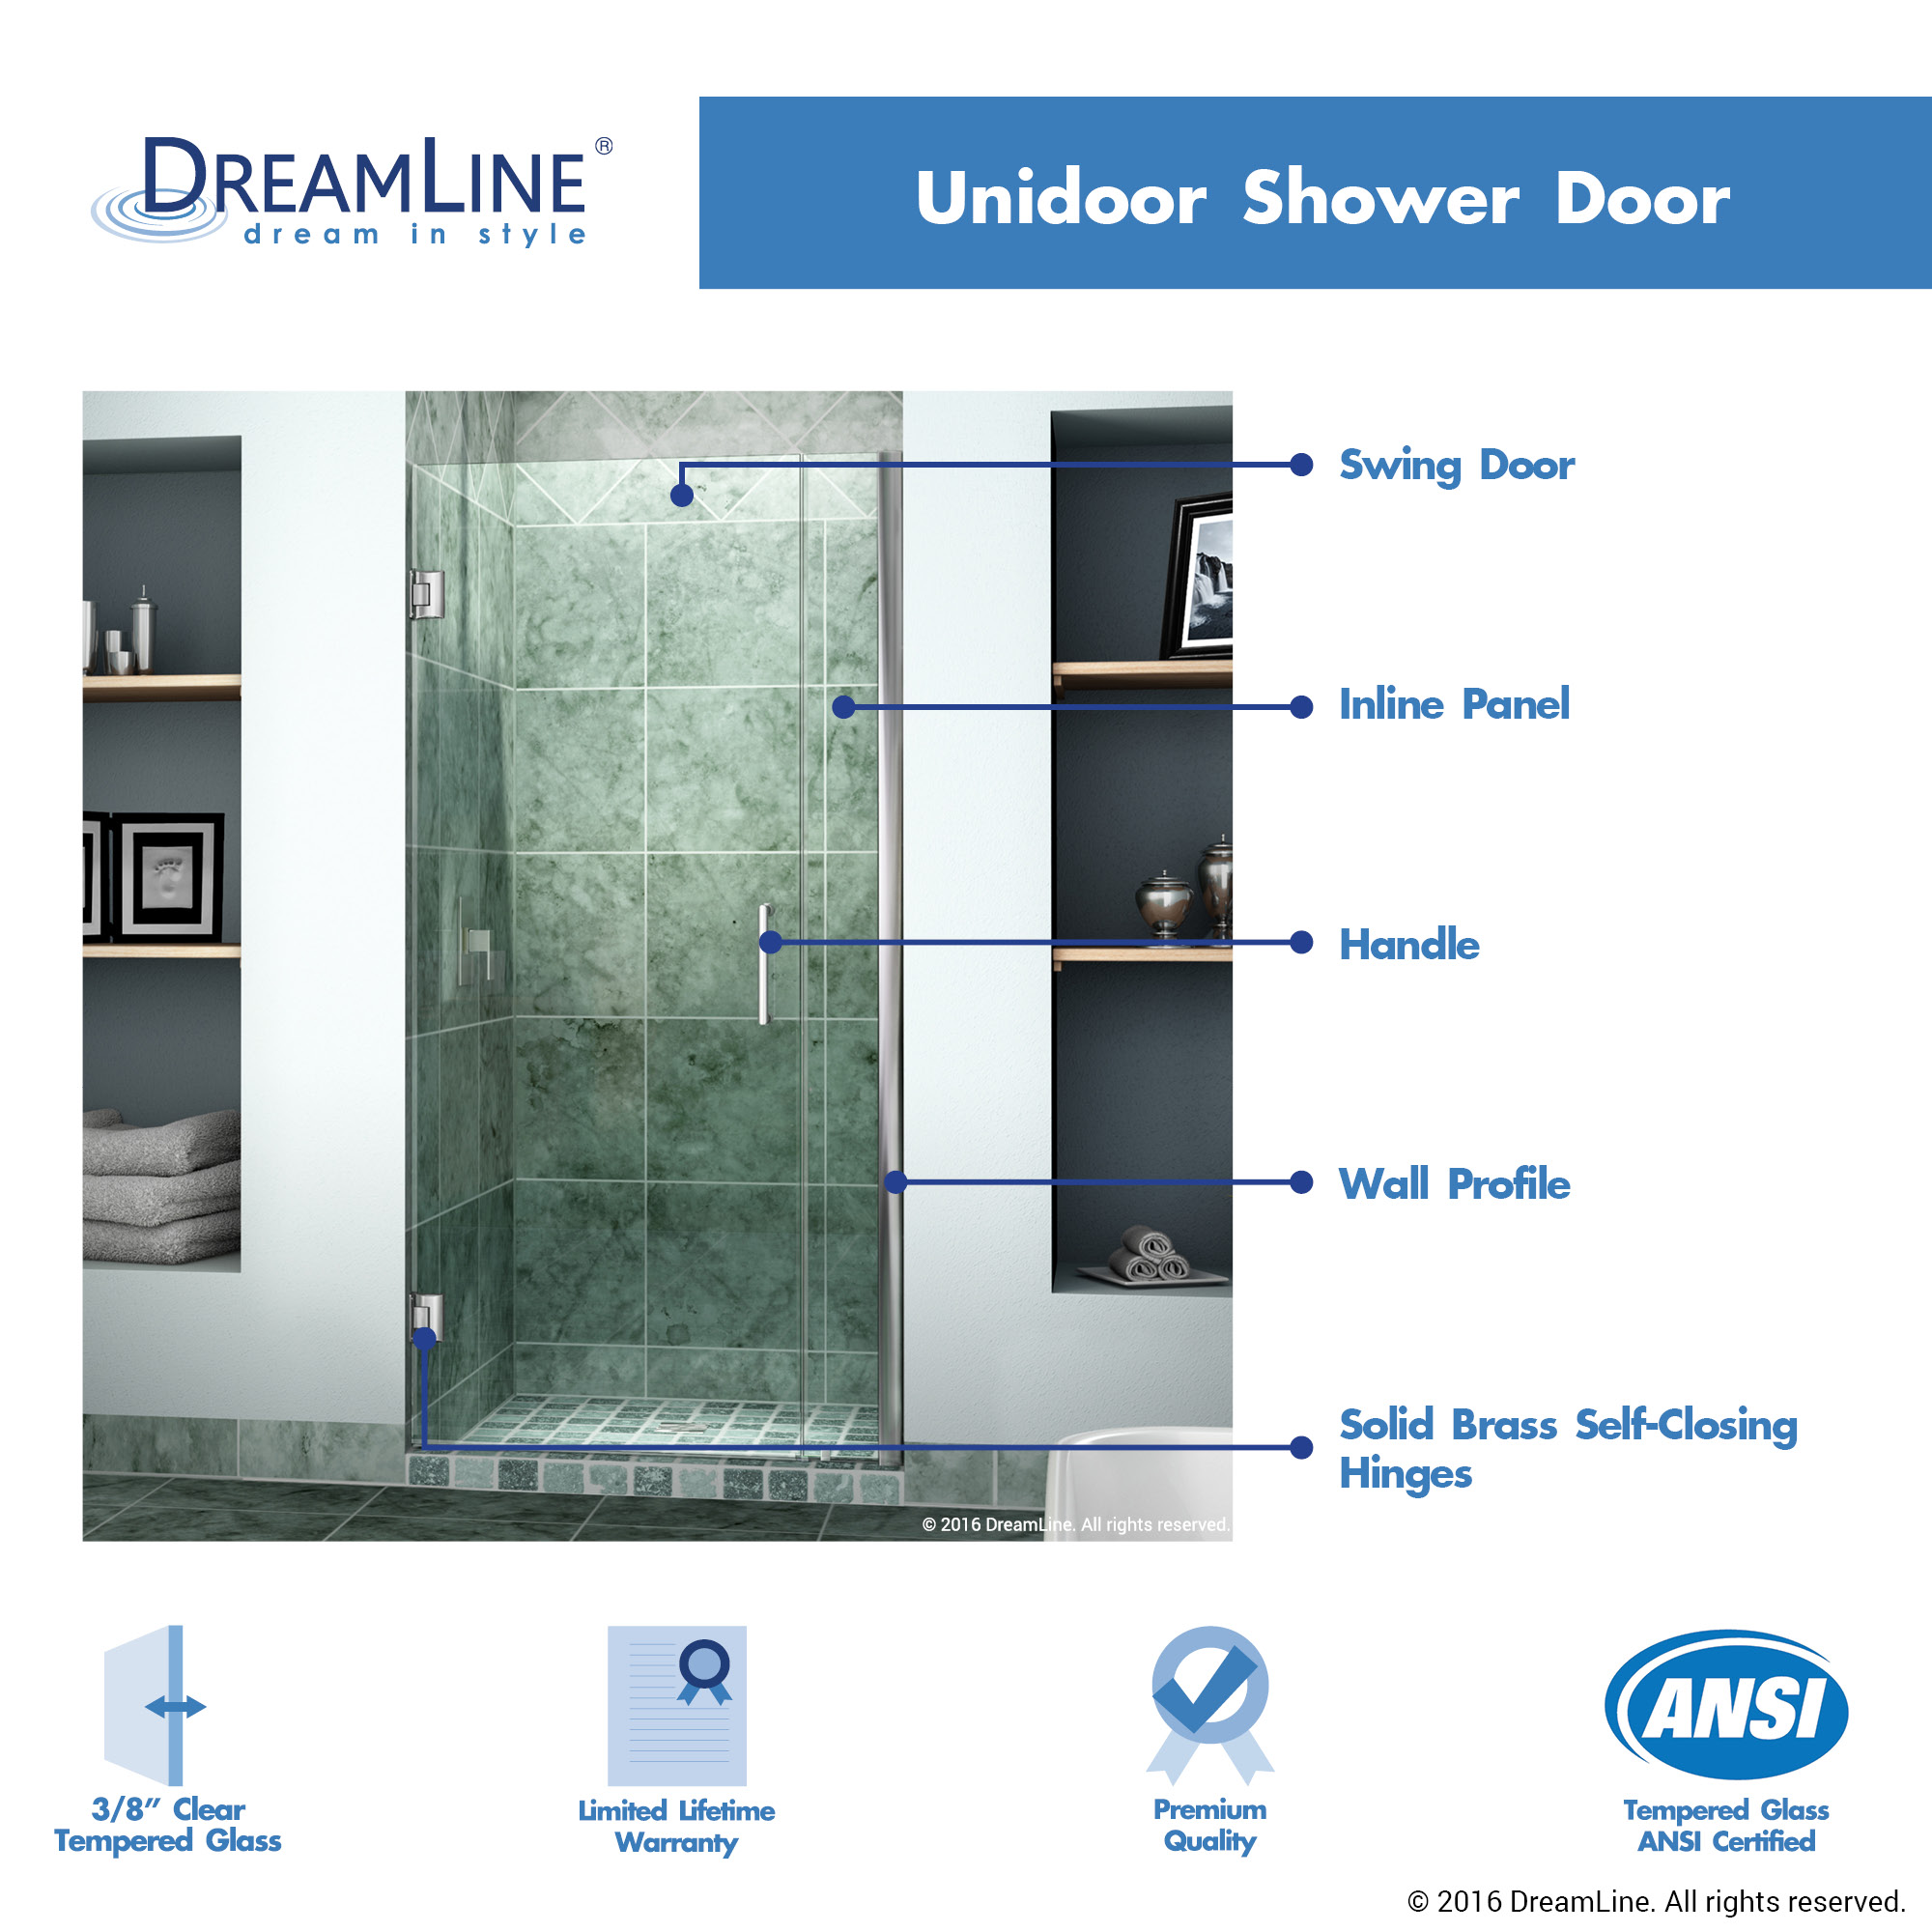 DreamLine SHDR-20317210-04 Brushed Nickel 31-32" Adjustable Shower Door